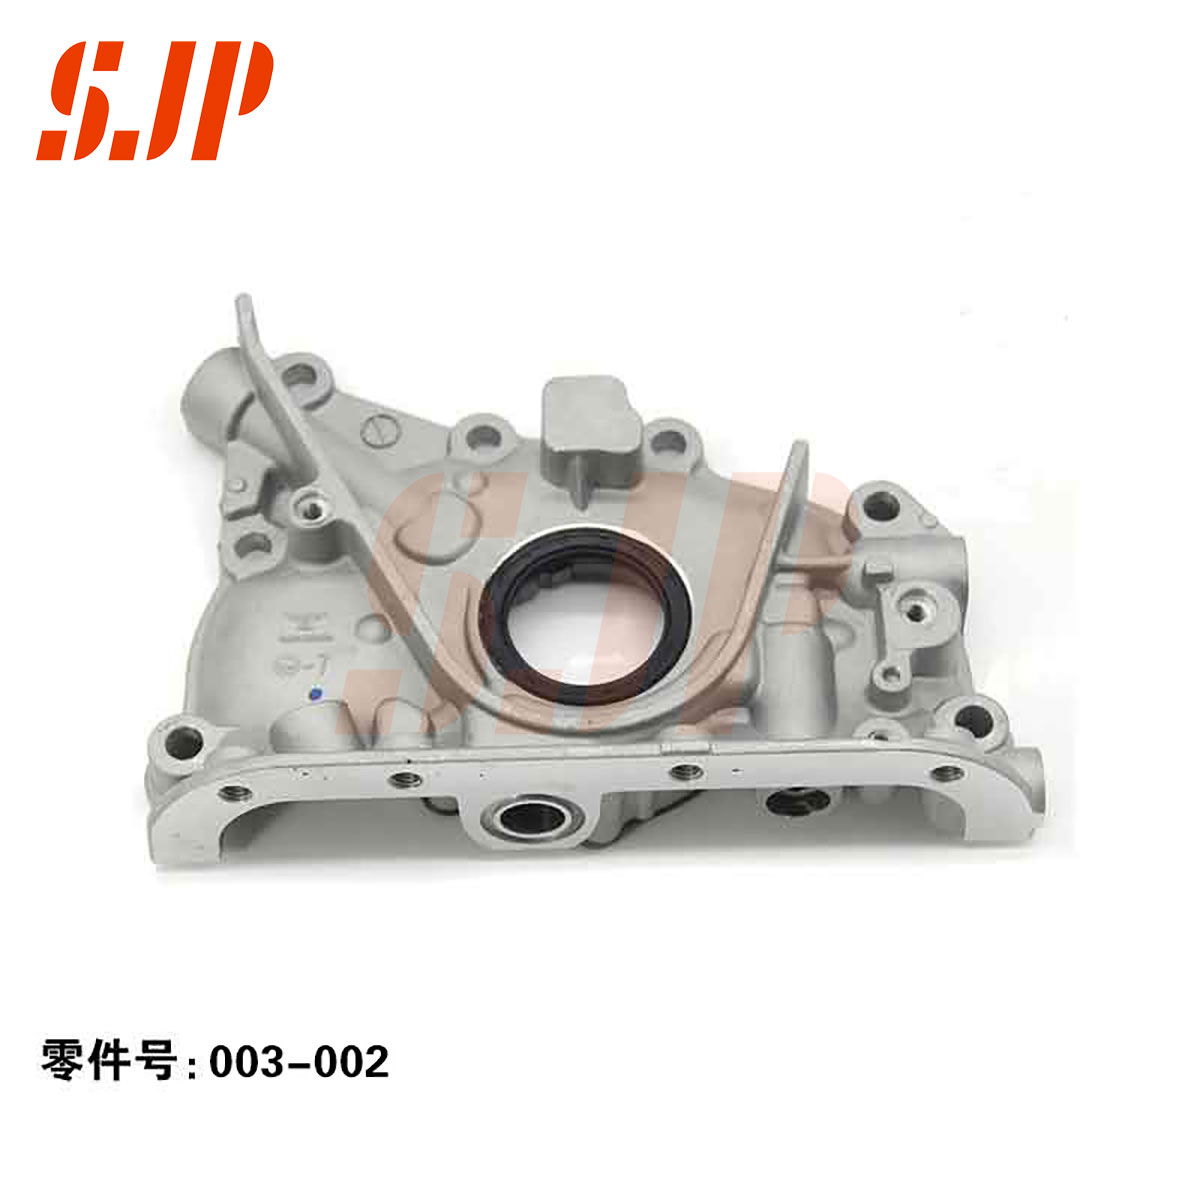 SJ-003-002 Oil Pump For F6/483Q Family 1.8